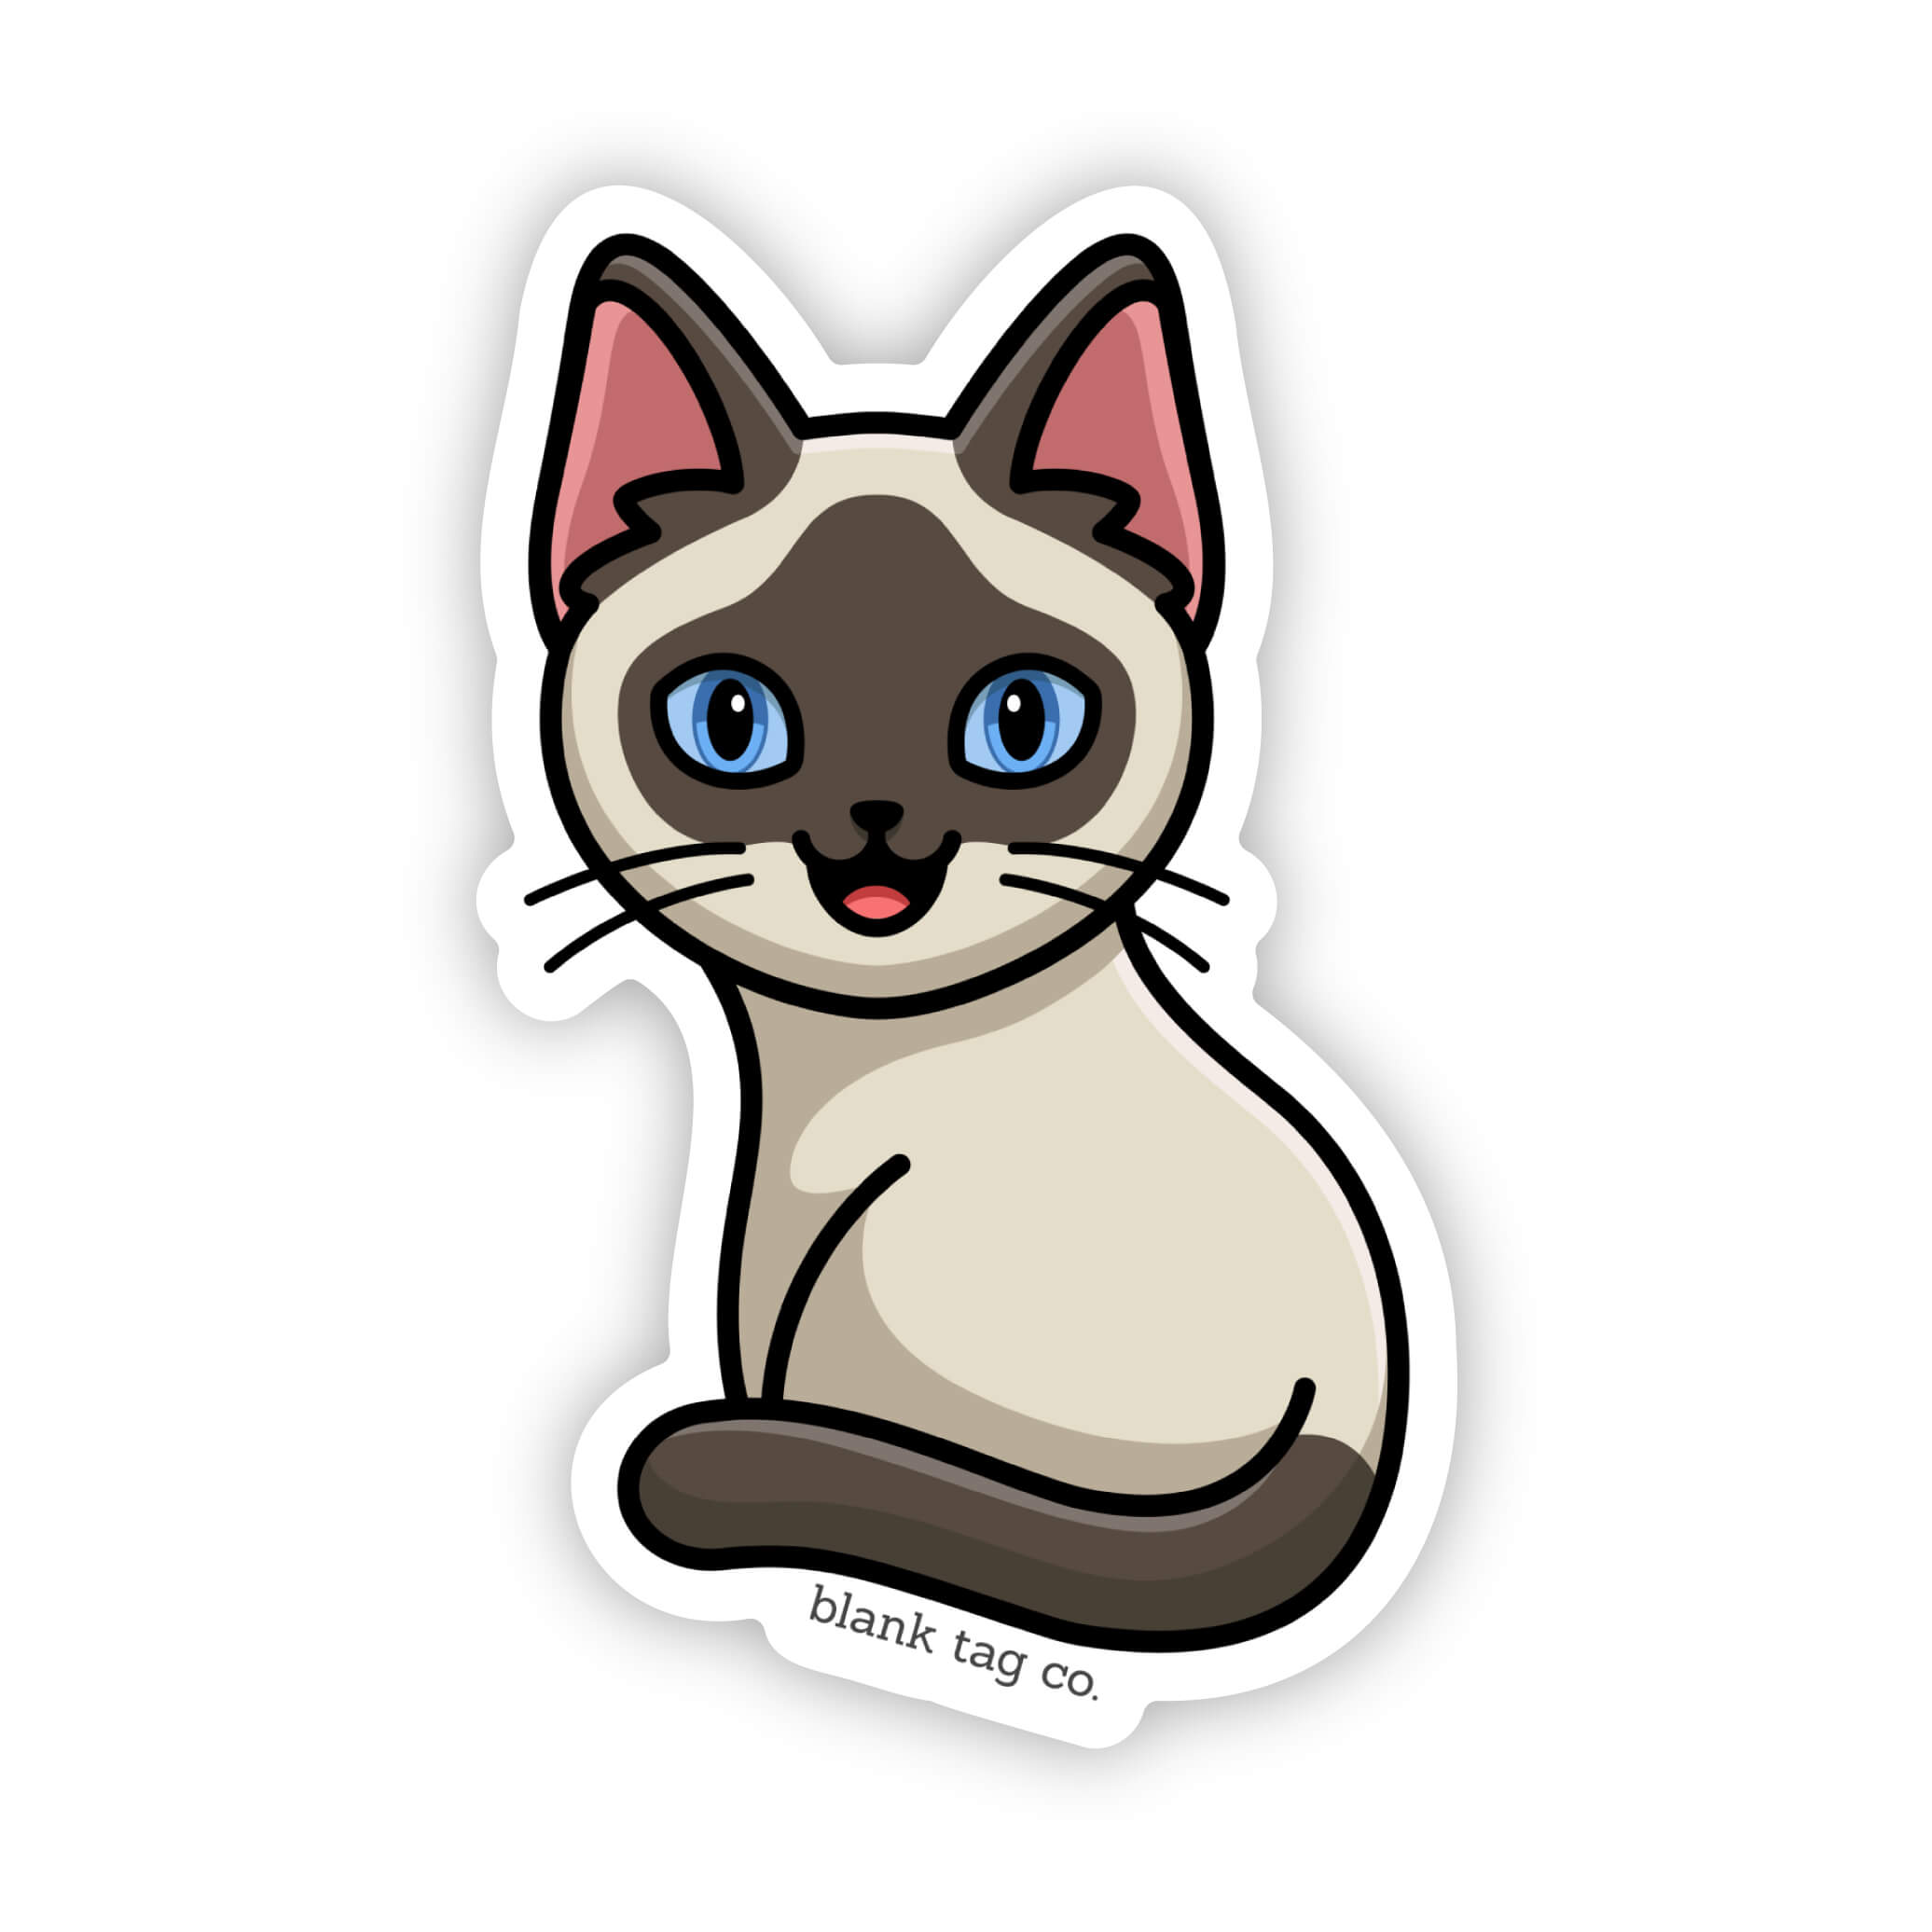 The Siamese Cat Sticker